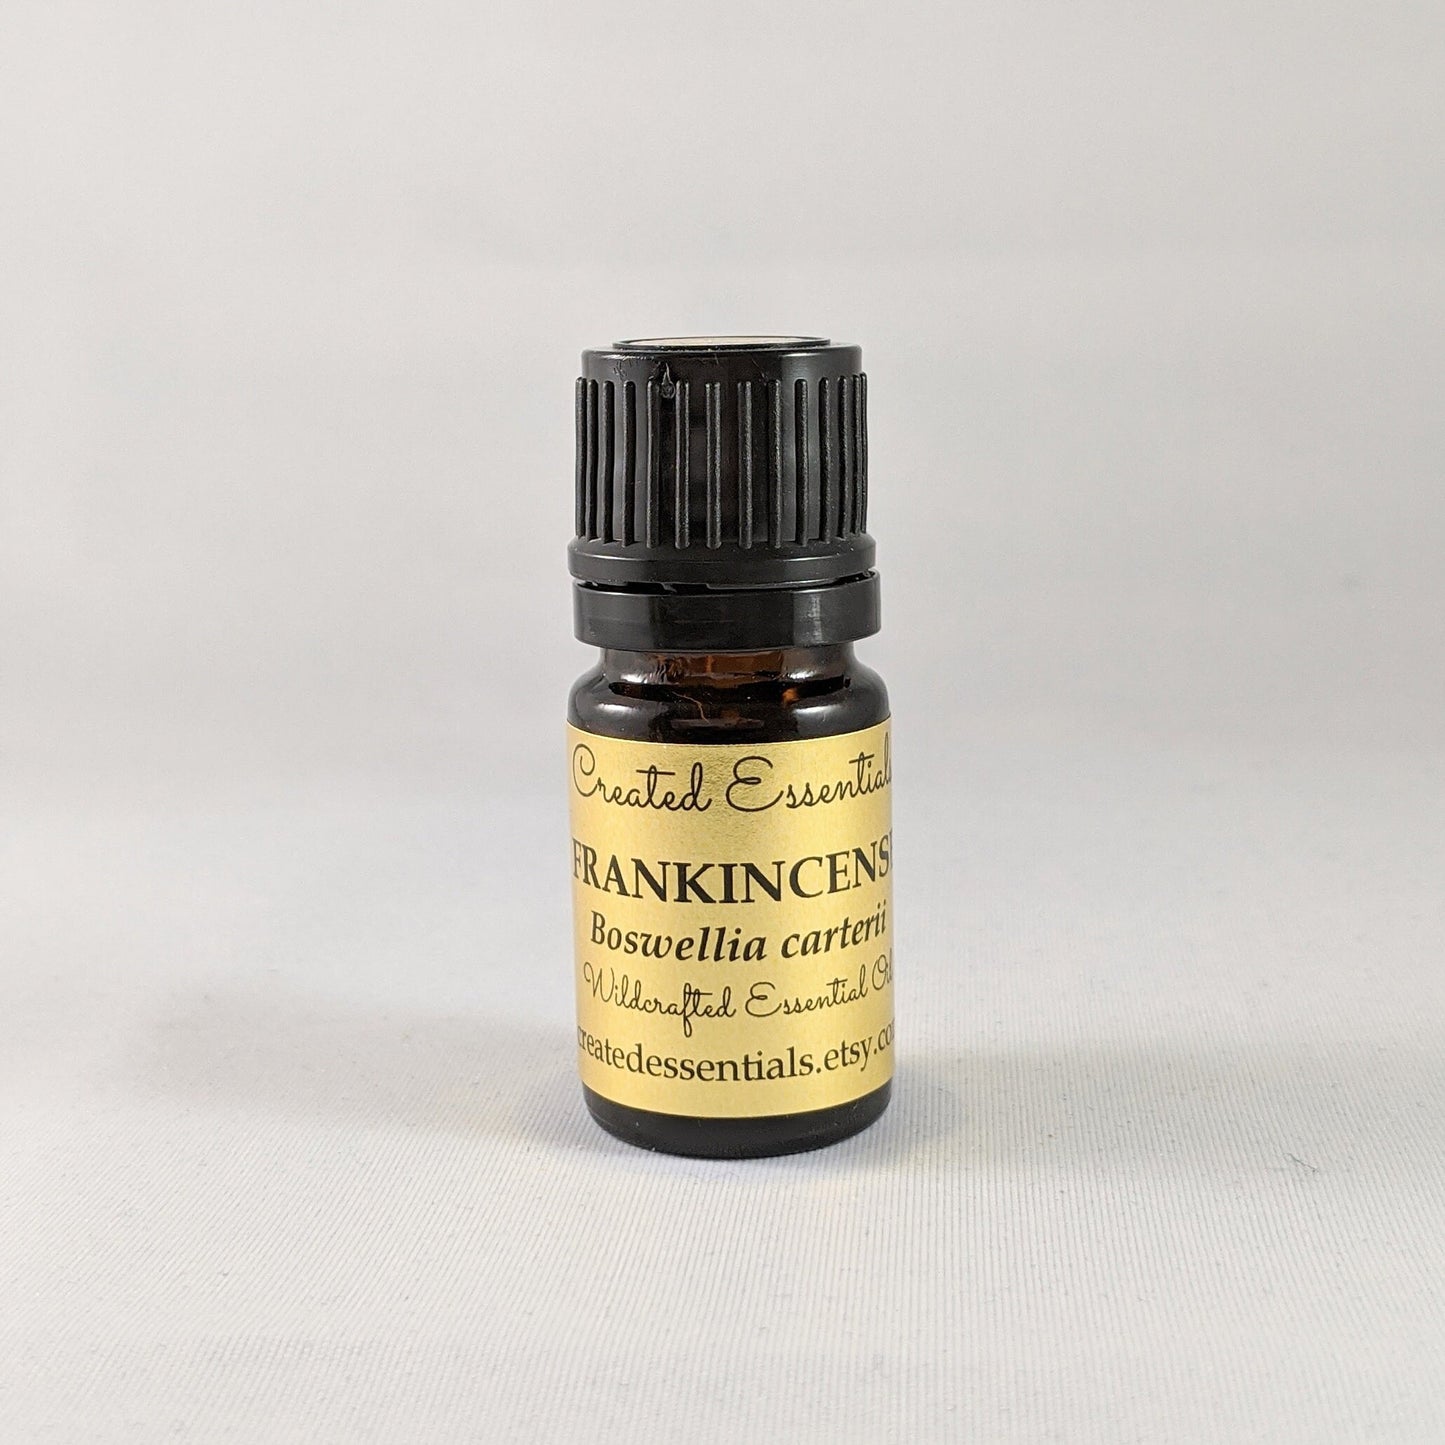 Frankincense Essential Oil | Pure Essential Oil of Frankincense, Wildcrafted | Somalia Frankincense Oil, Boswellia carteri | Therapeutic